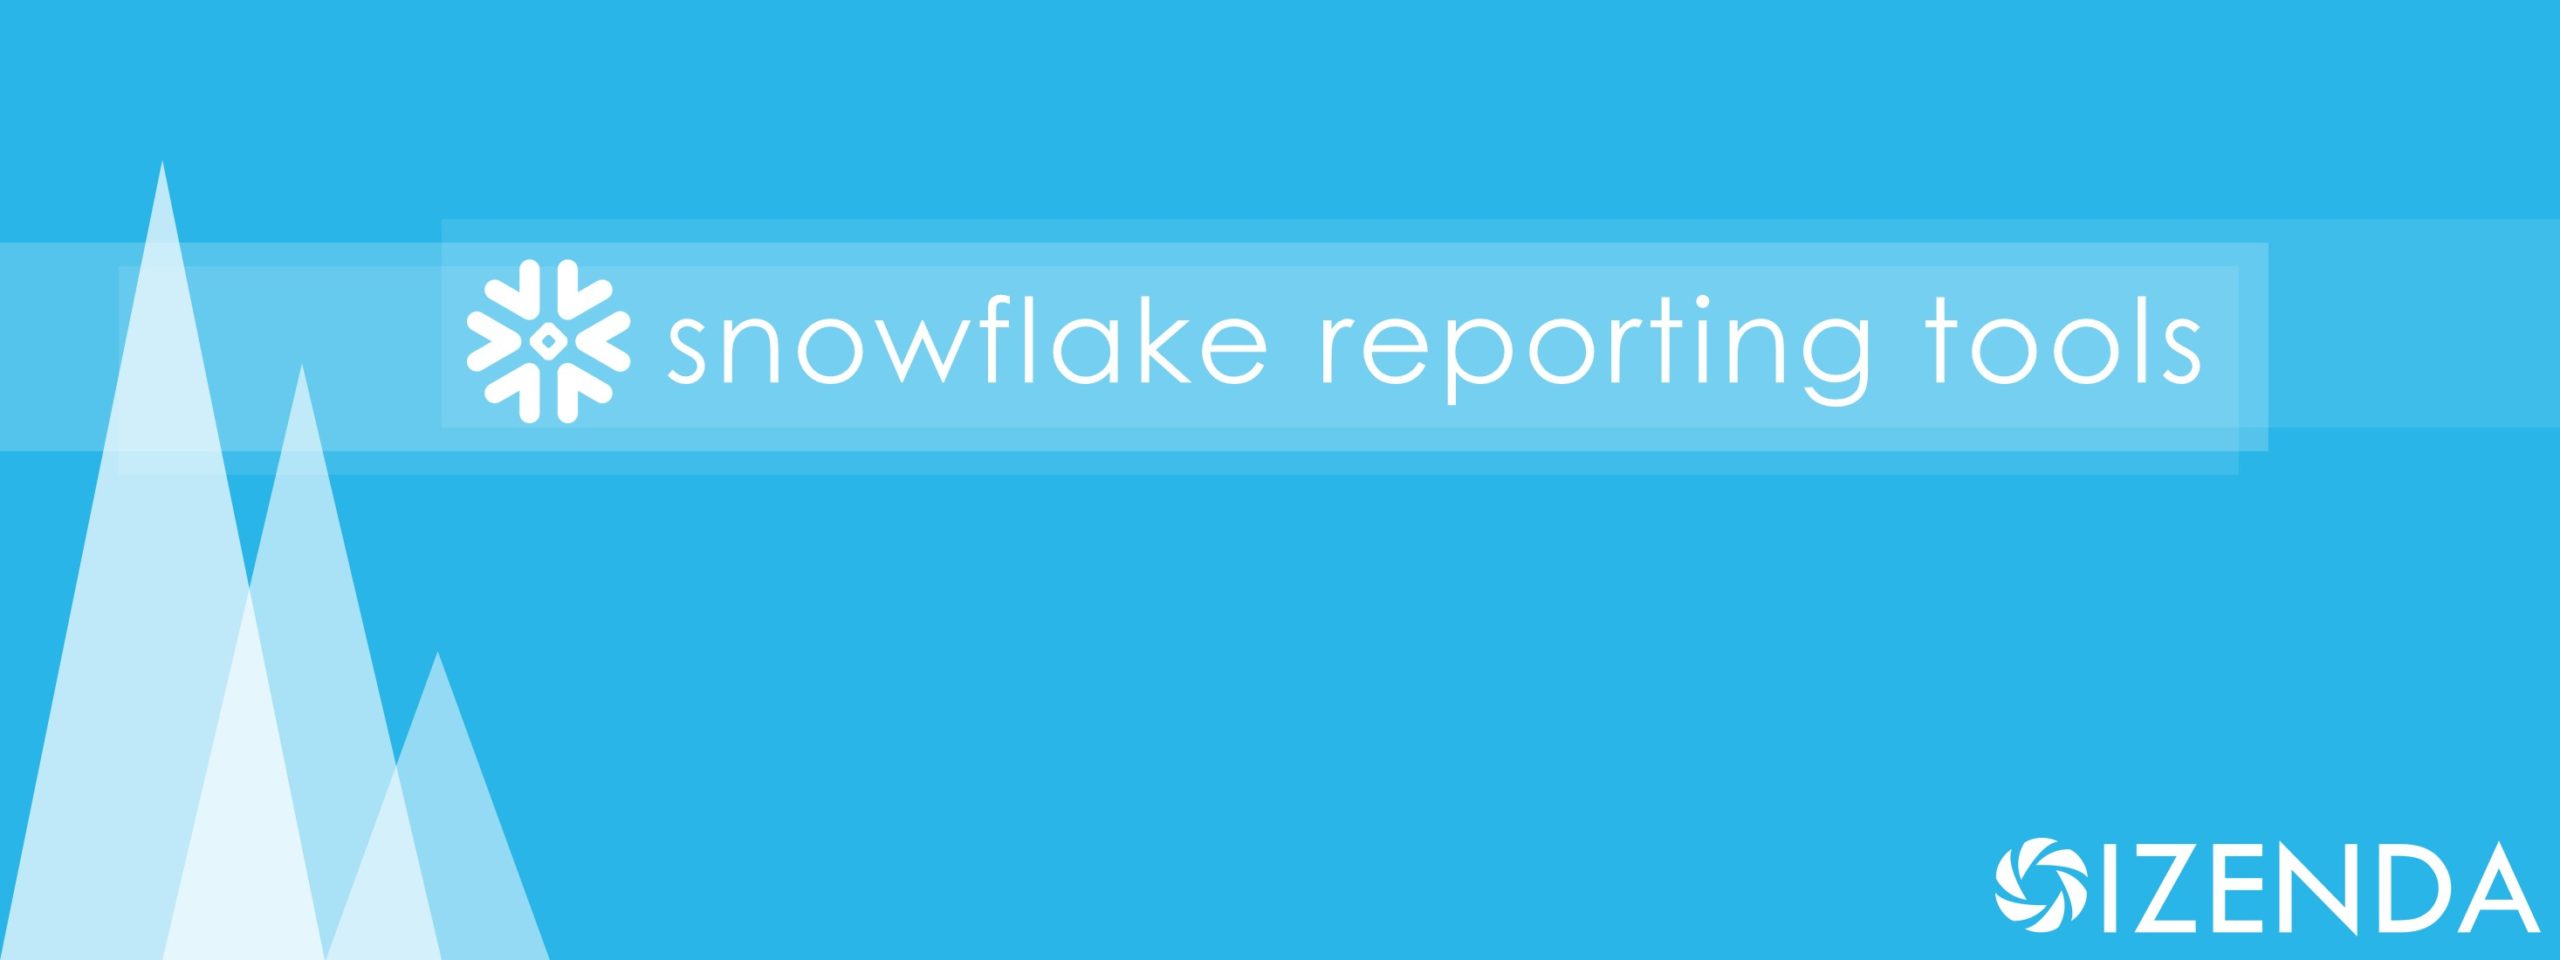 snowflake reporting tools